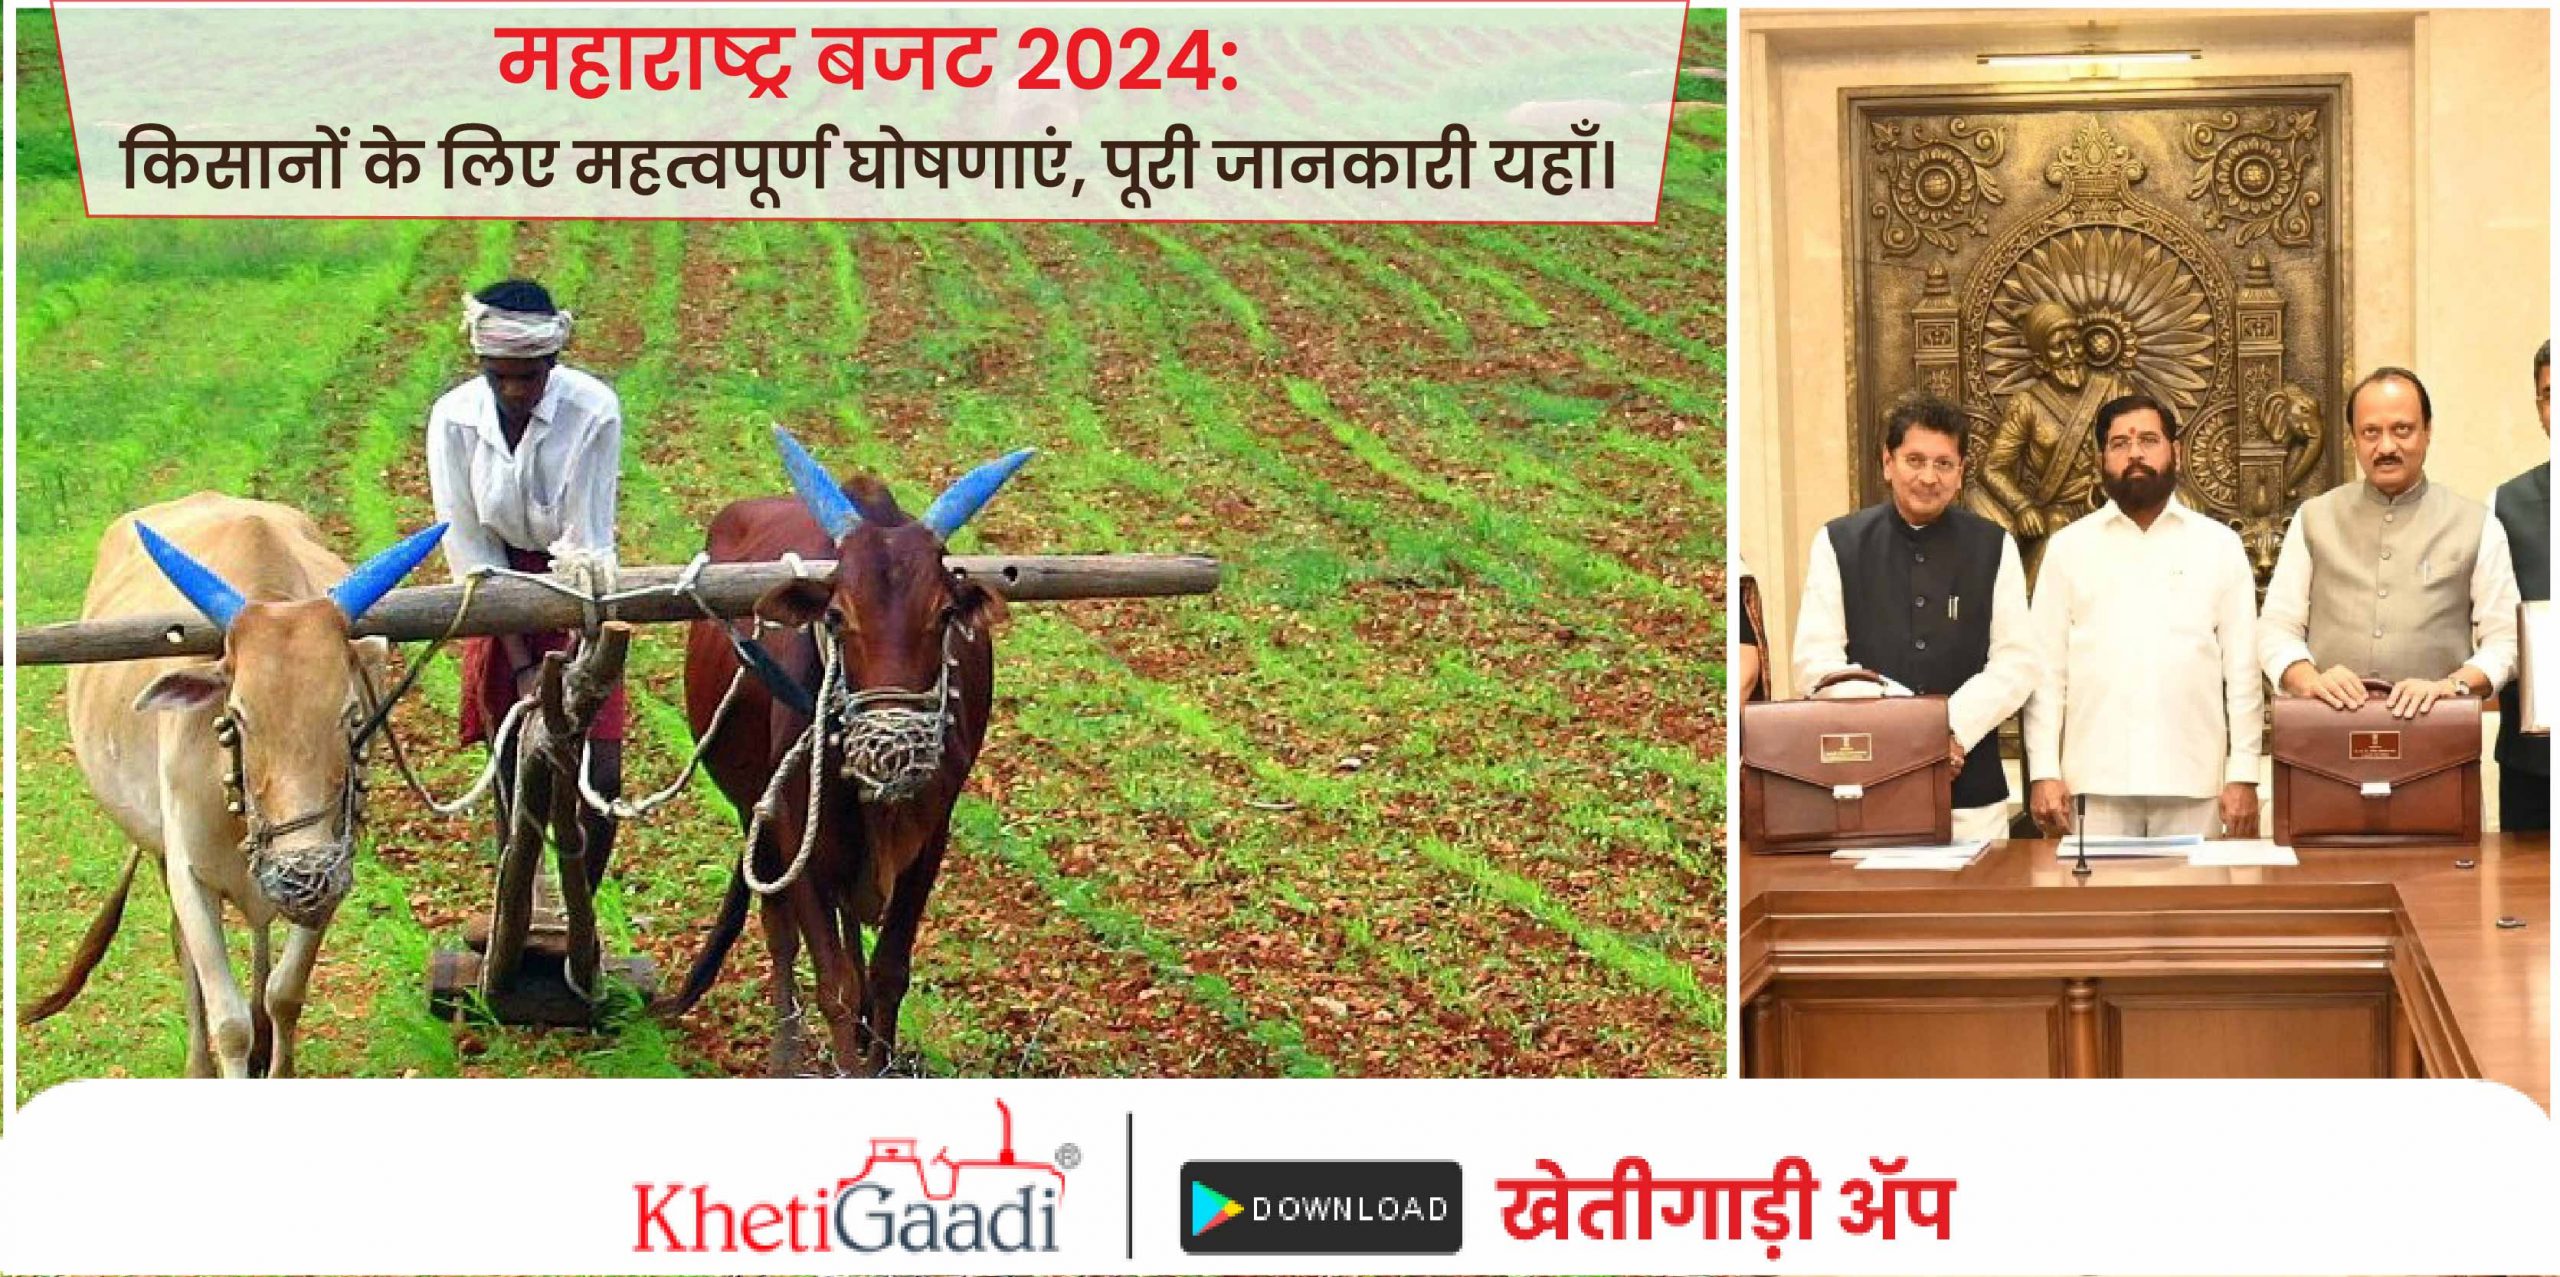 महाराष्ट्र बजट 2024: किसानों के लिए महत्वपूर्ण घोषणाएं, पूरी जानकारी यहाँ।